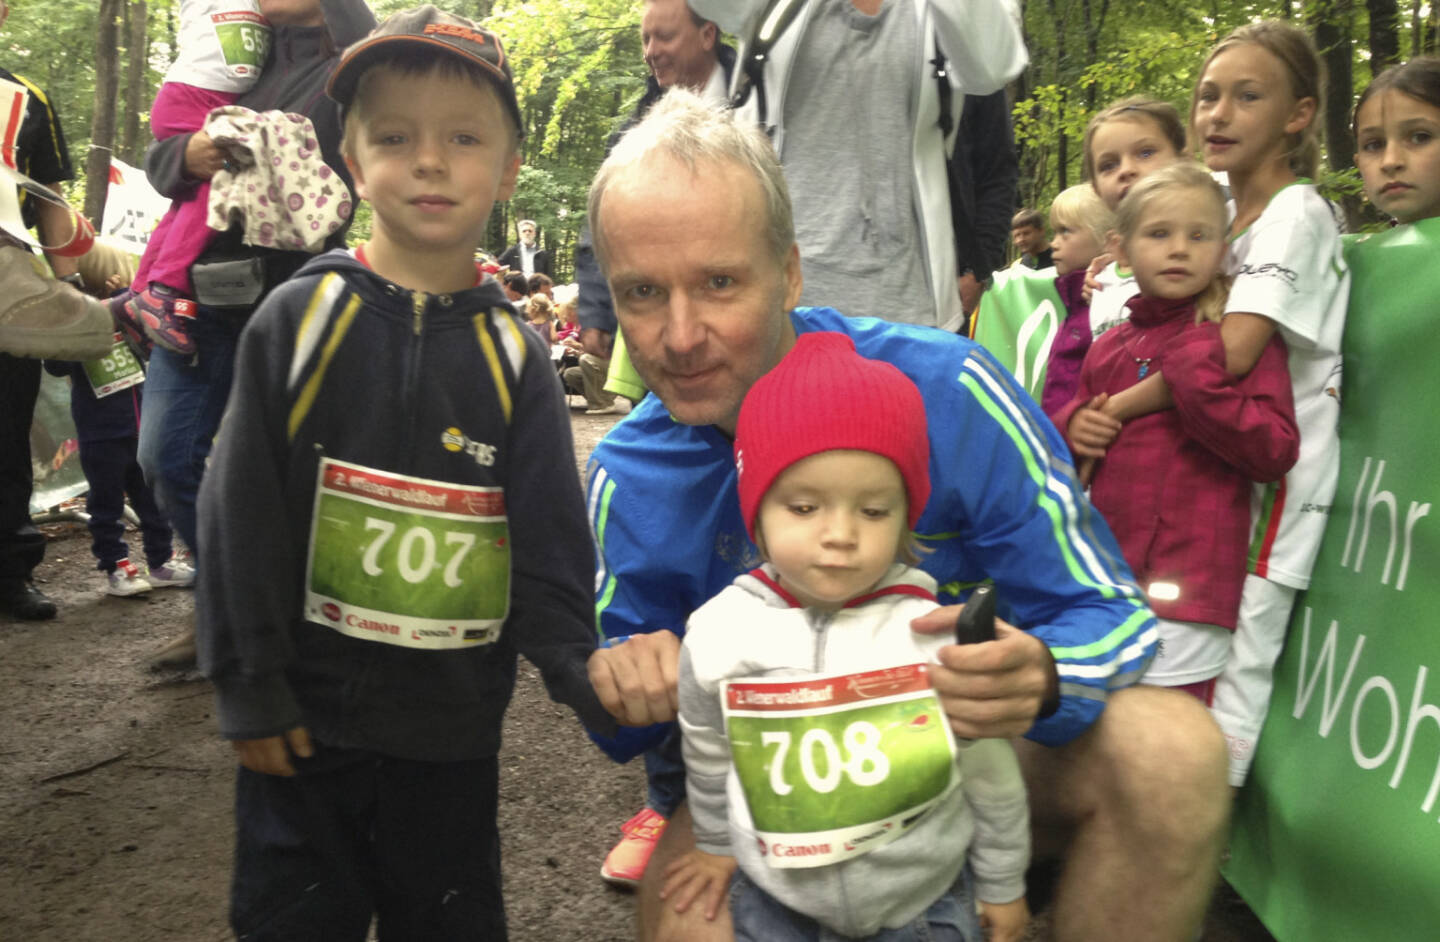 Bilder Wienerwaldlauf 2013: Mit den Kids (2 bzw. 5 Jahre) vor deren 500m-Lauf. Unter all jenen, die nicht von den Eltern getragen wurden, waren die beiden suprig unterwegs. Mir sind die beiden auch schon zu schwer ...